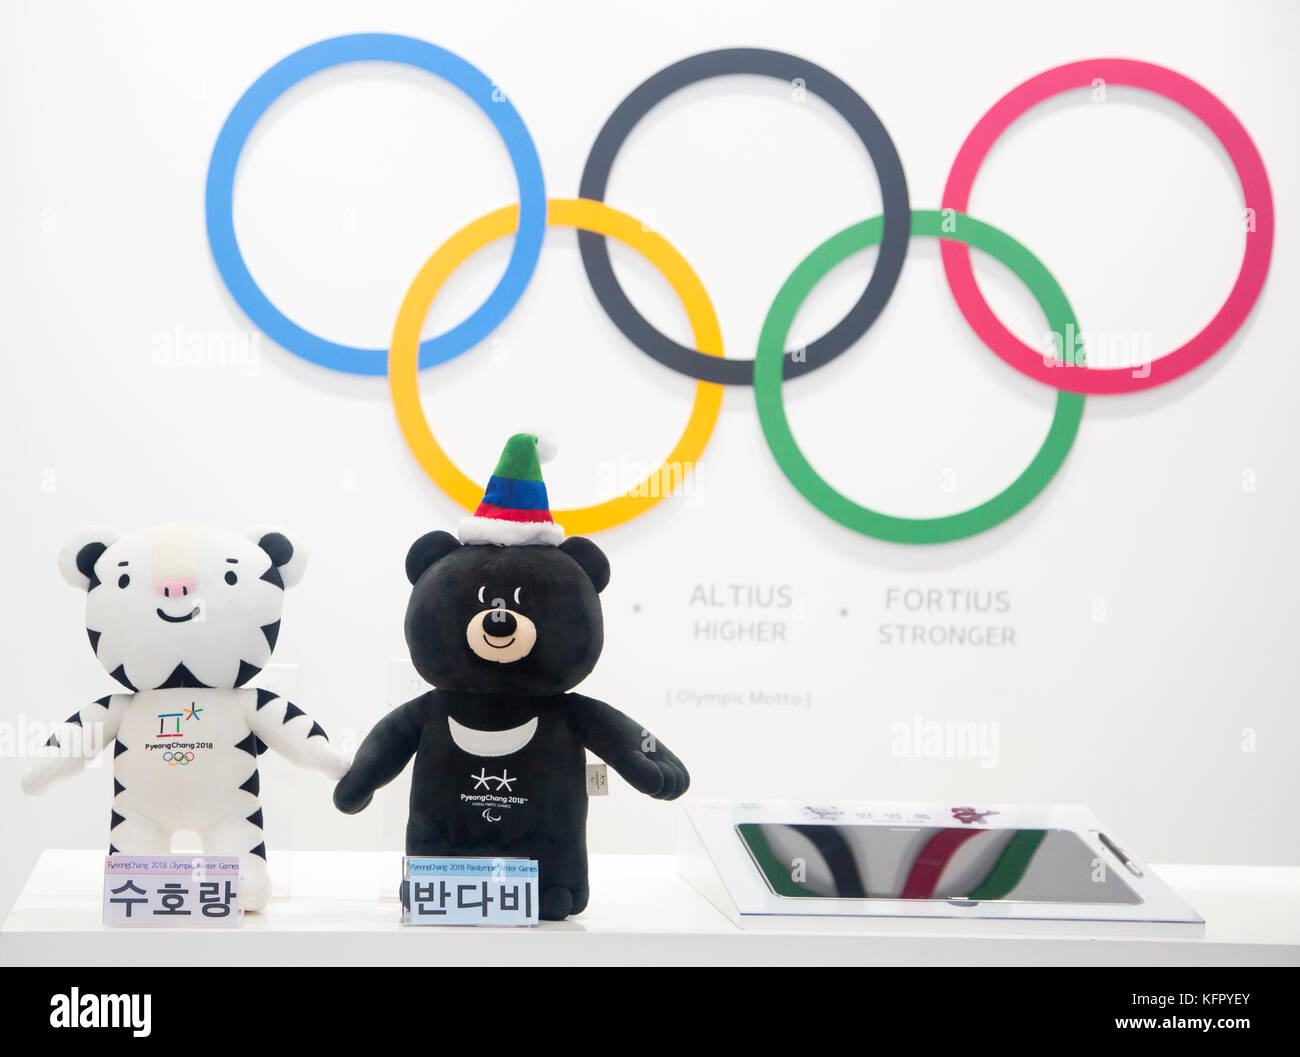 La Mascota De Los Juegos Olimpicos De Invierno Pyeongchang Oct 30